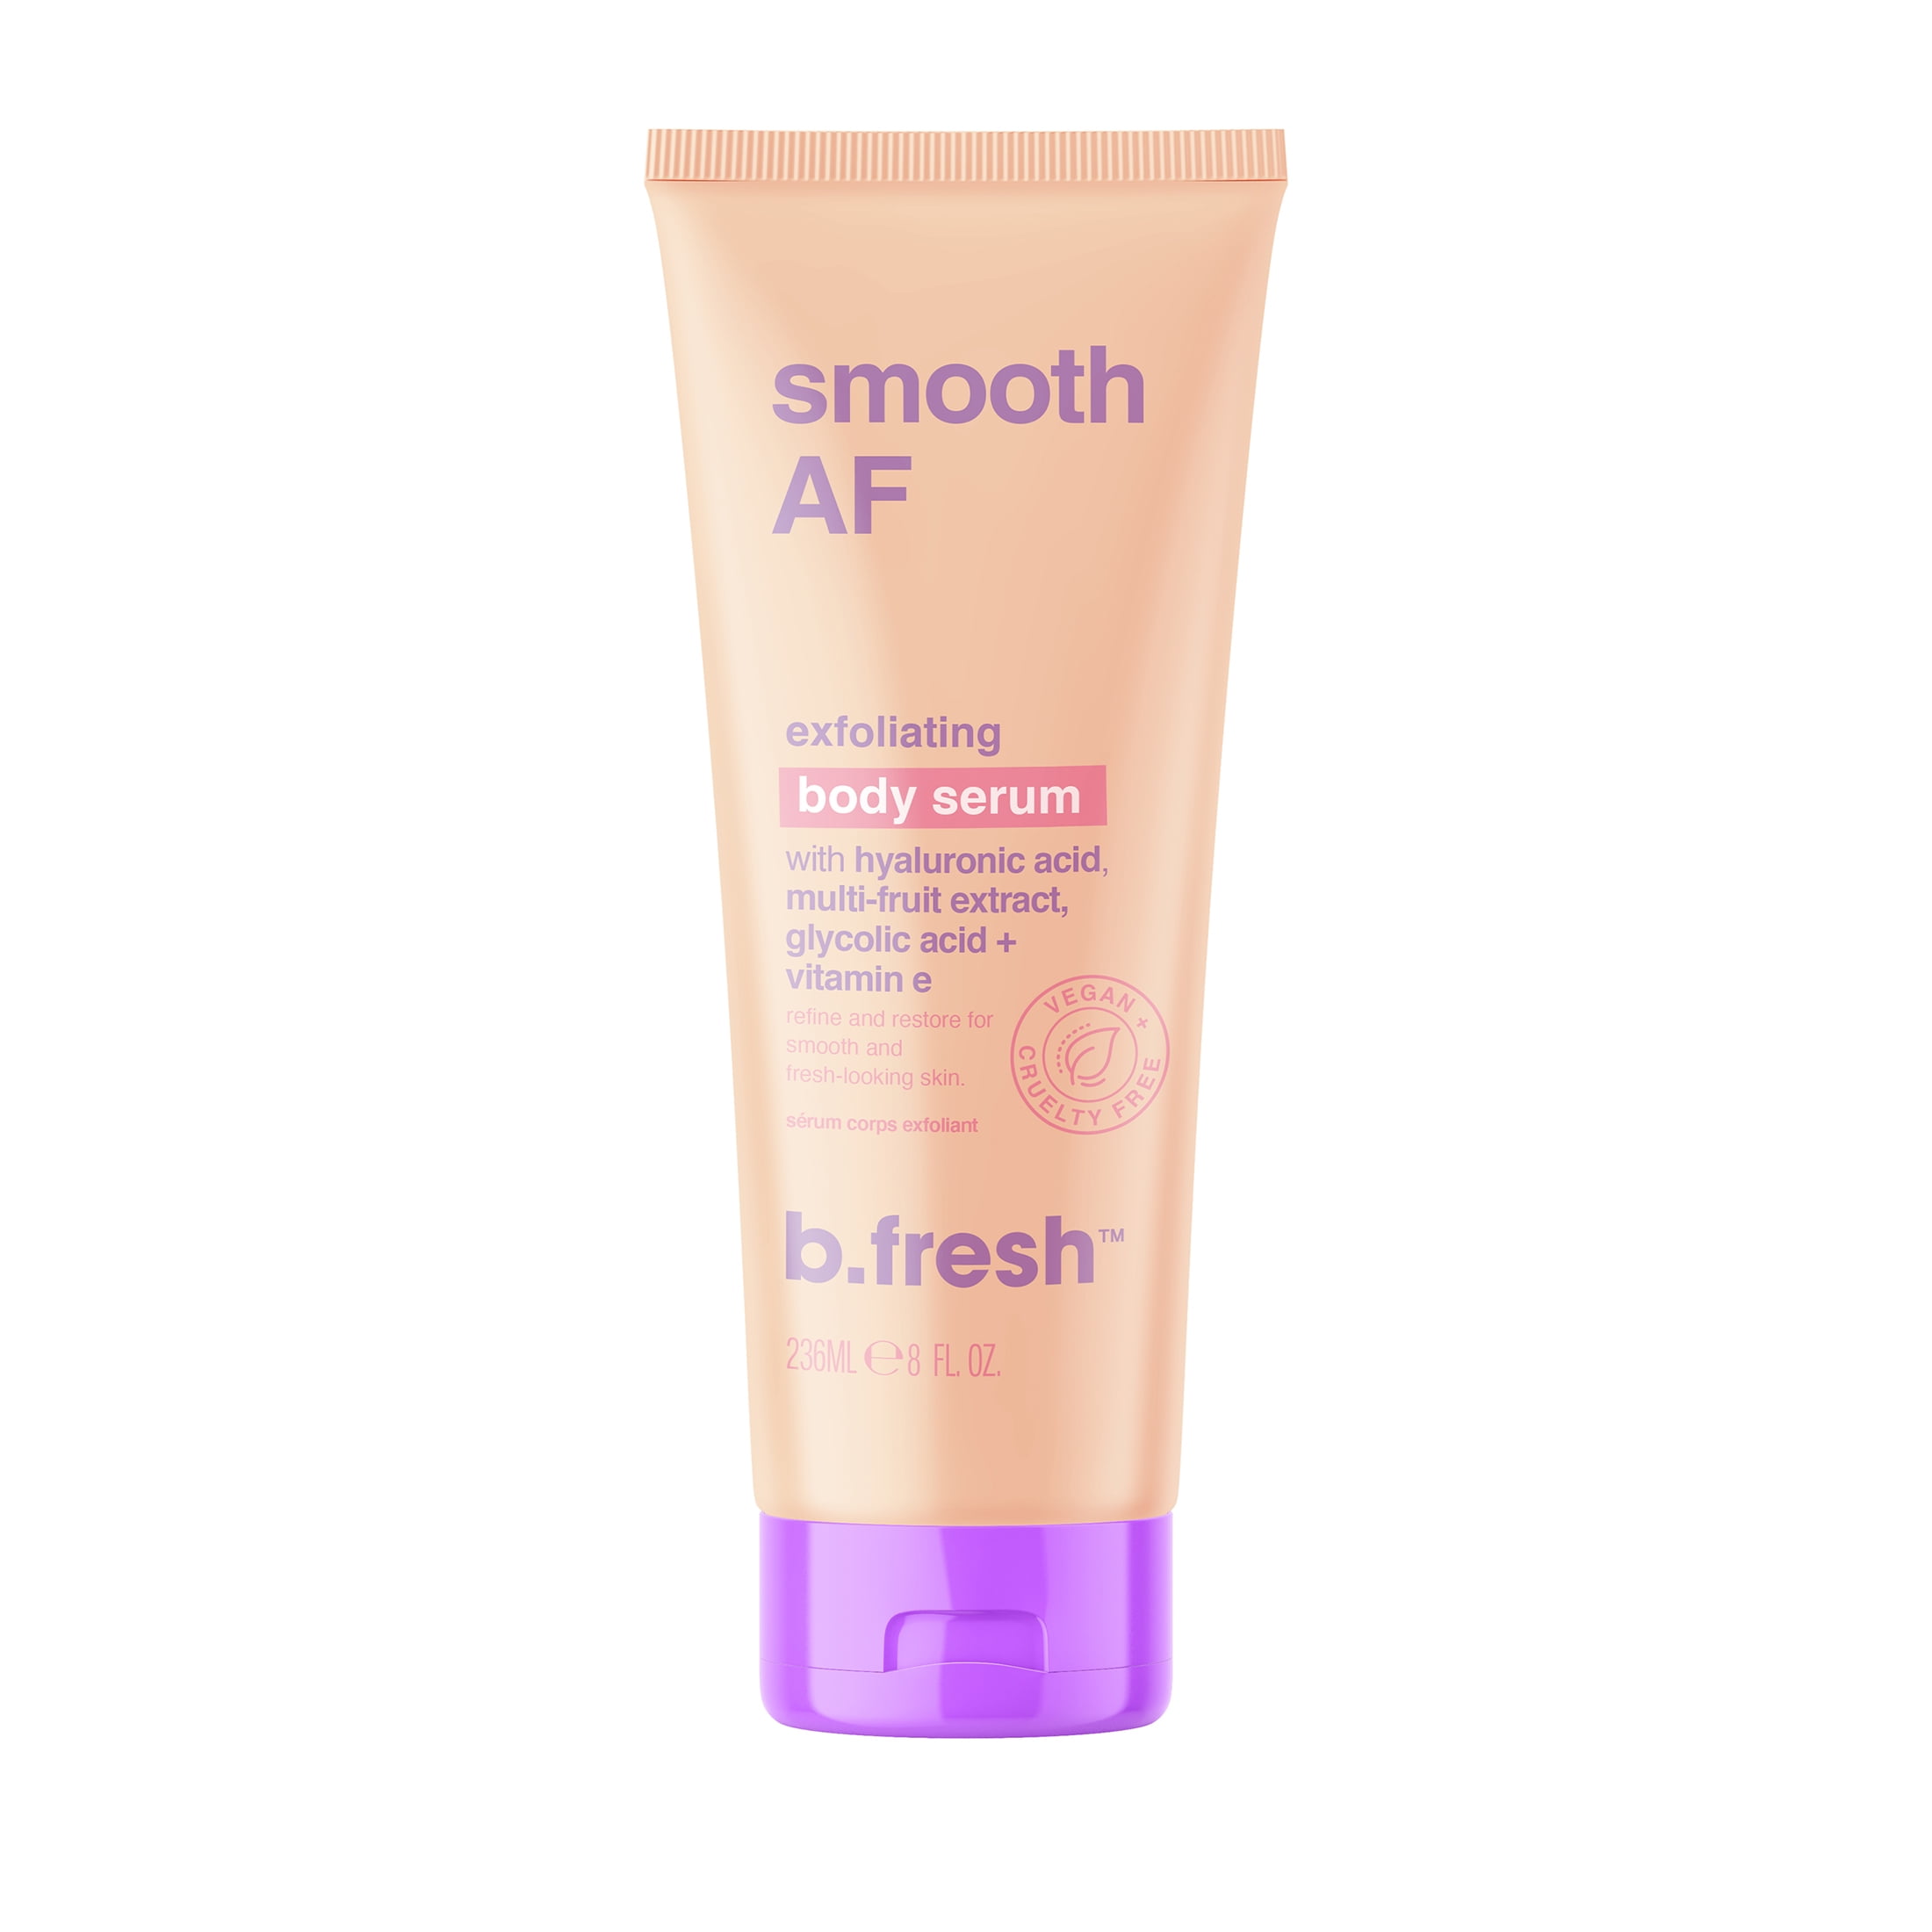 b.fresh smooth AF - exfoliating body serum, 8 fl oz